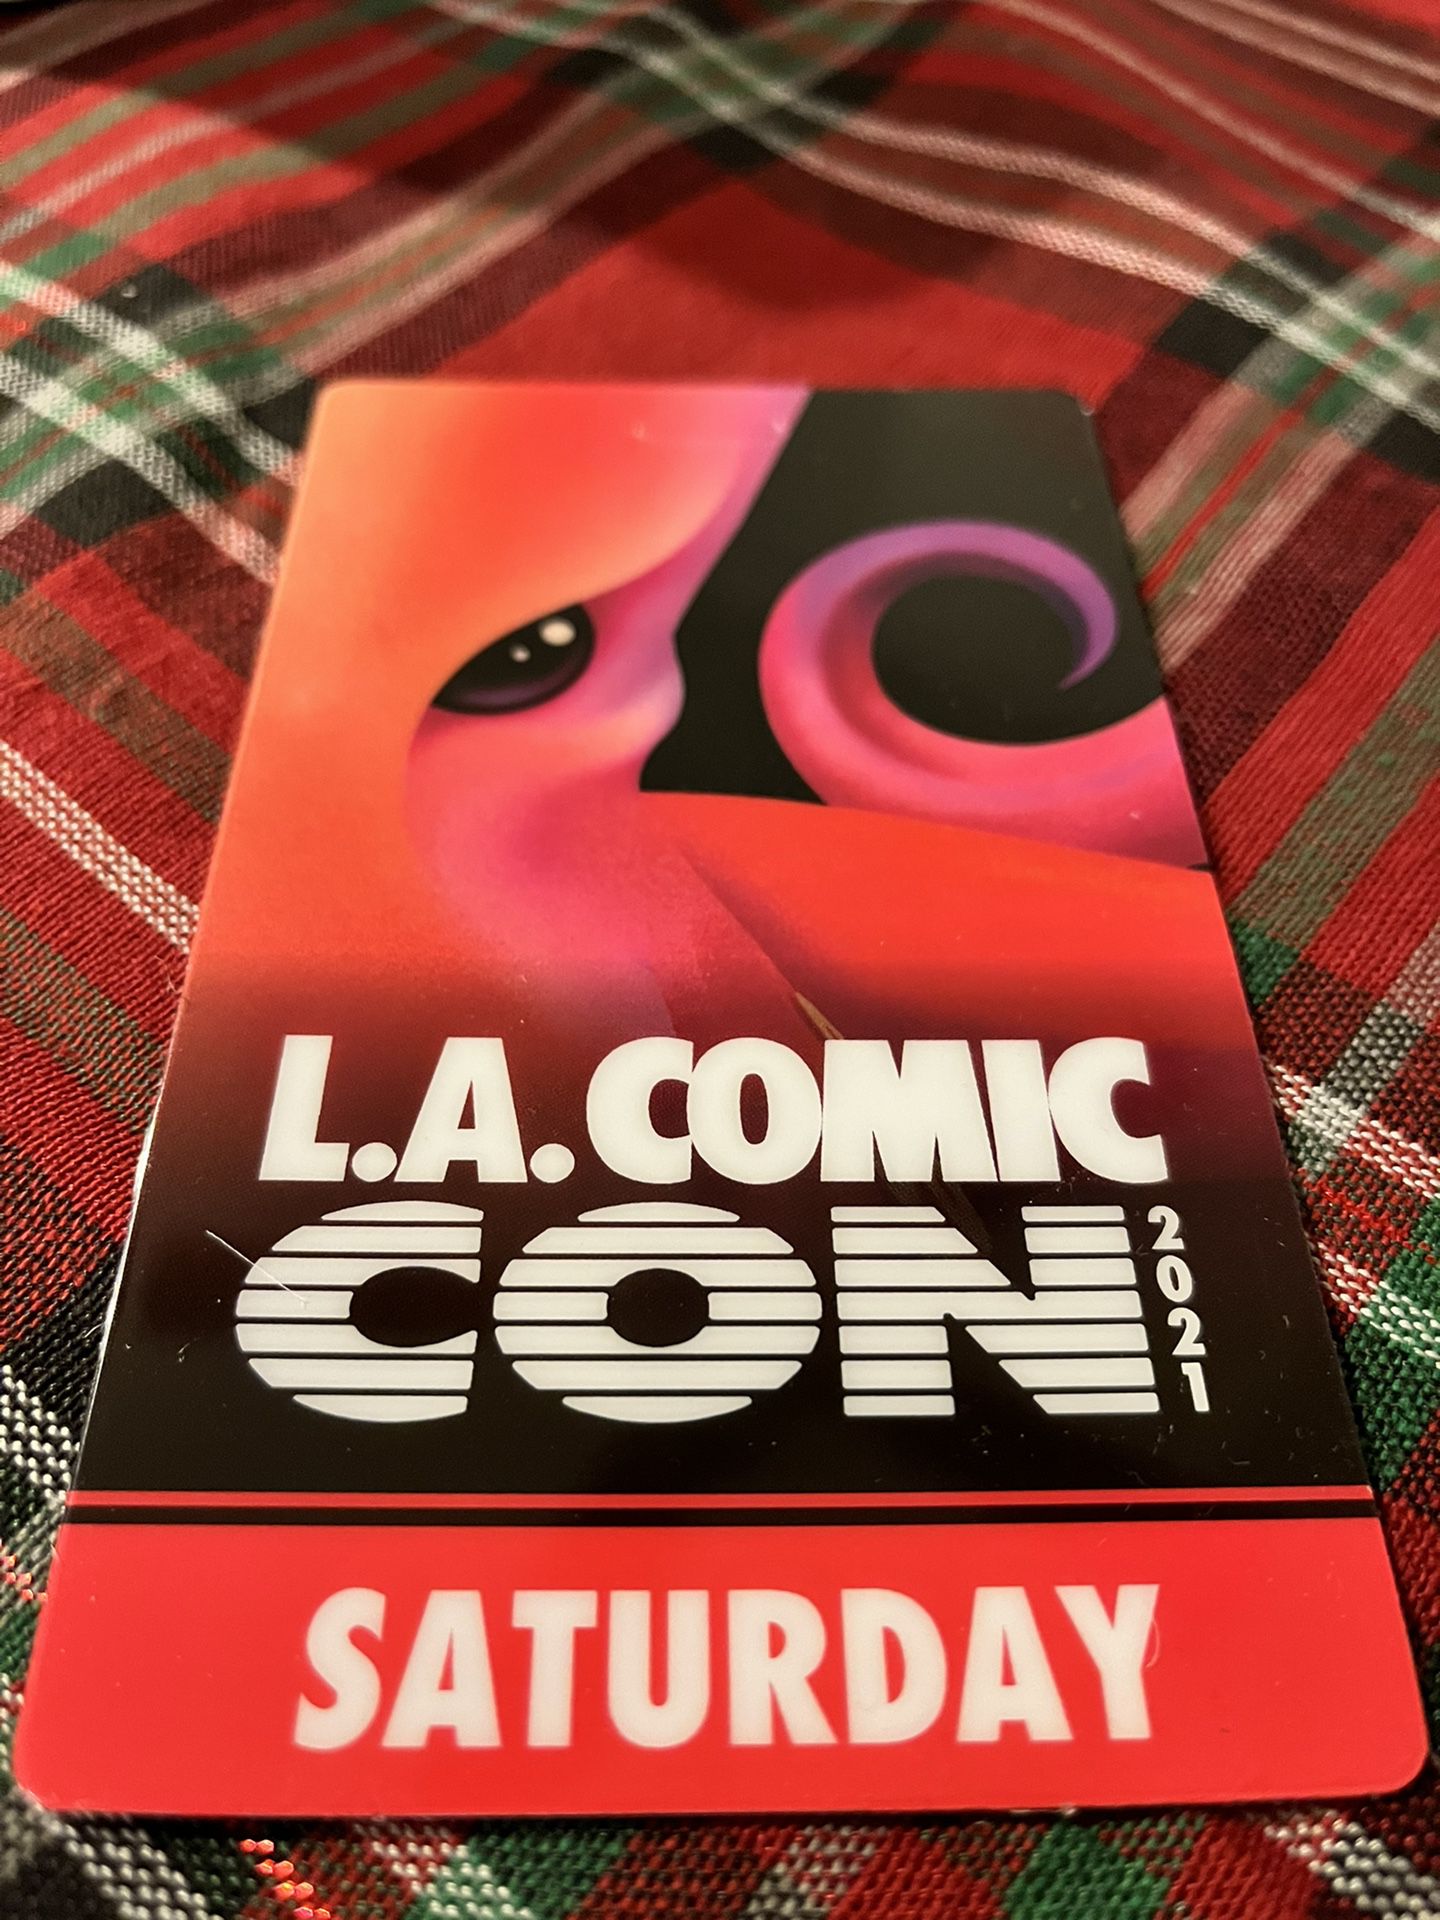 Saturday Pass Comicon LA